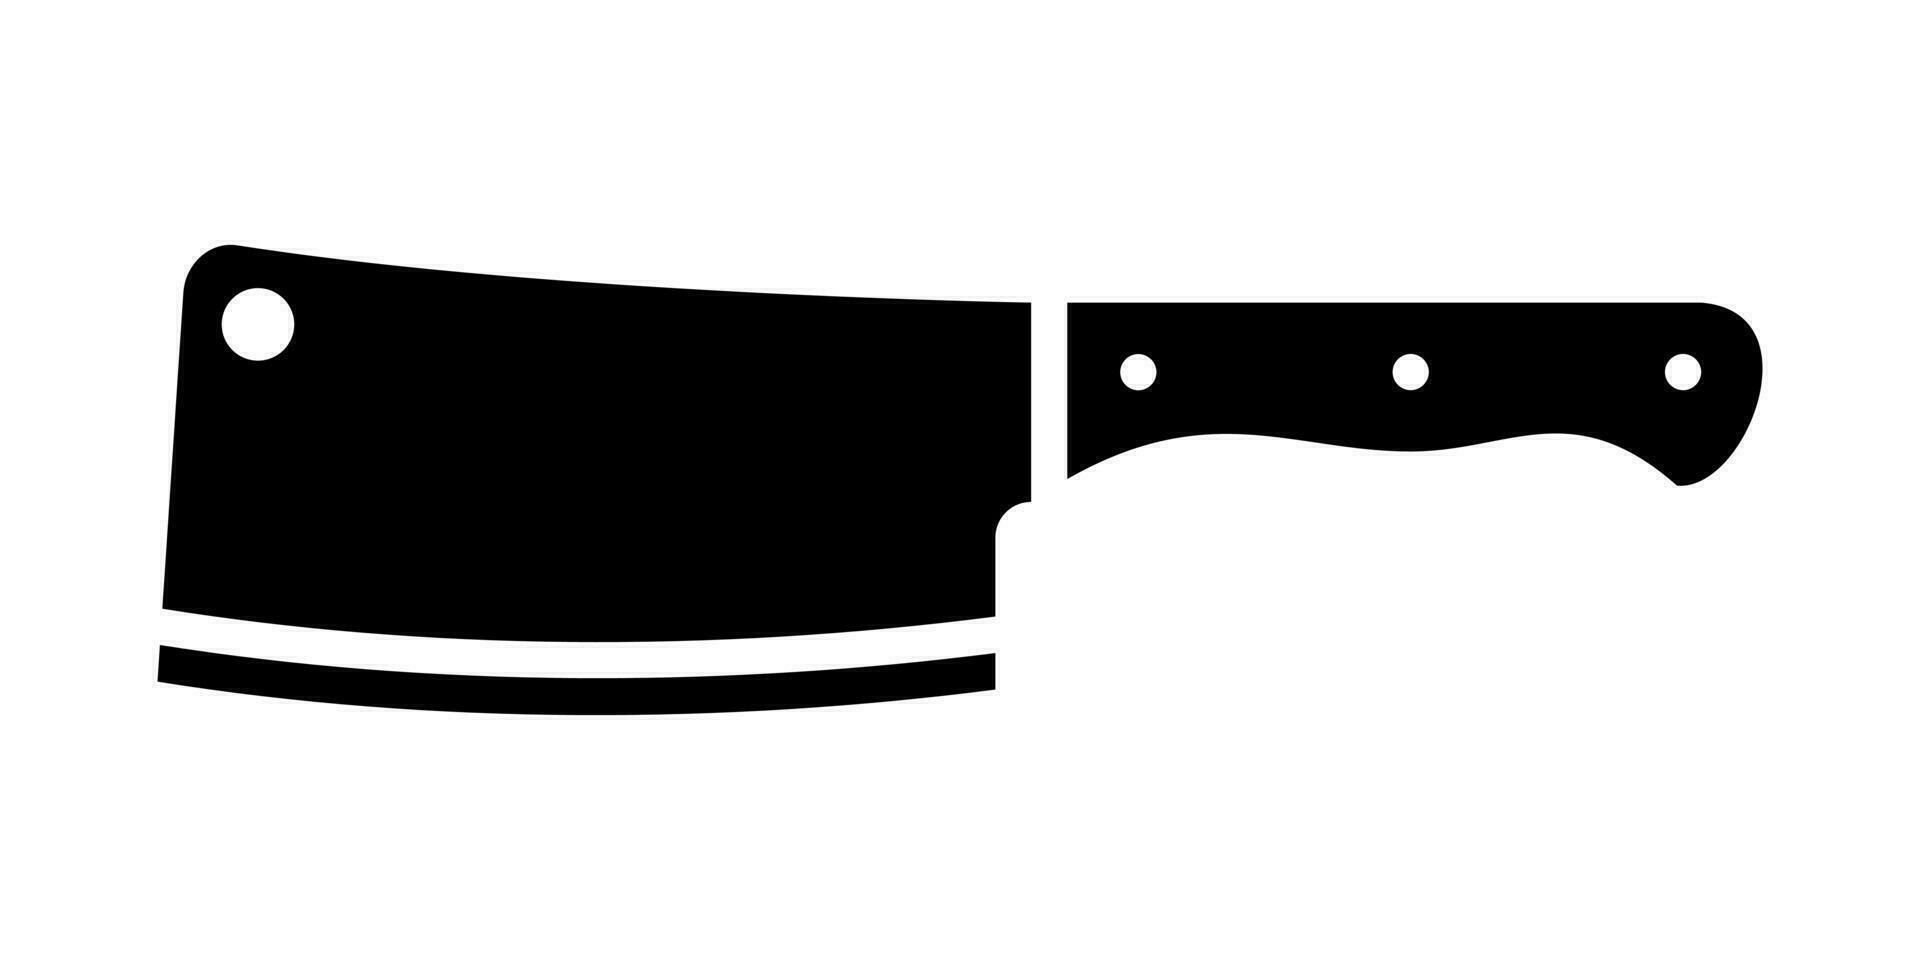 slagers bijl mes. staal keuken gereedschap met breed blad voor hakken en slachten vlees en vector gevogelte